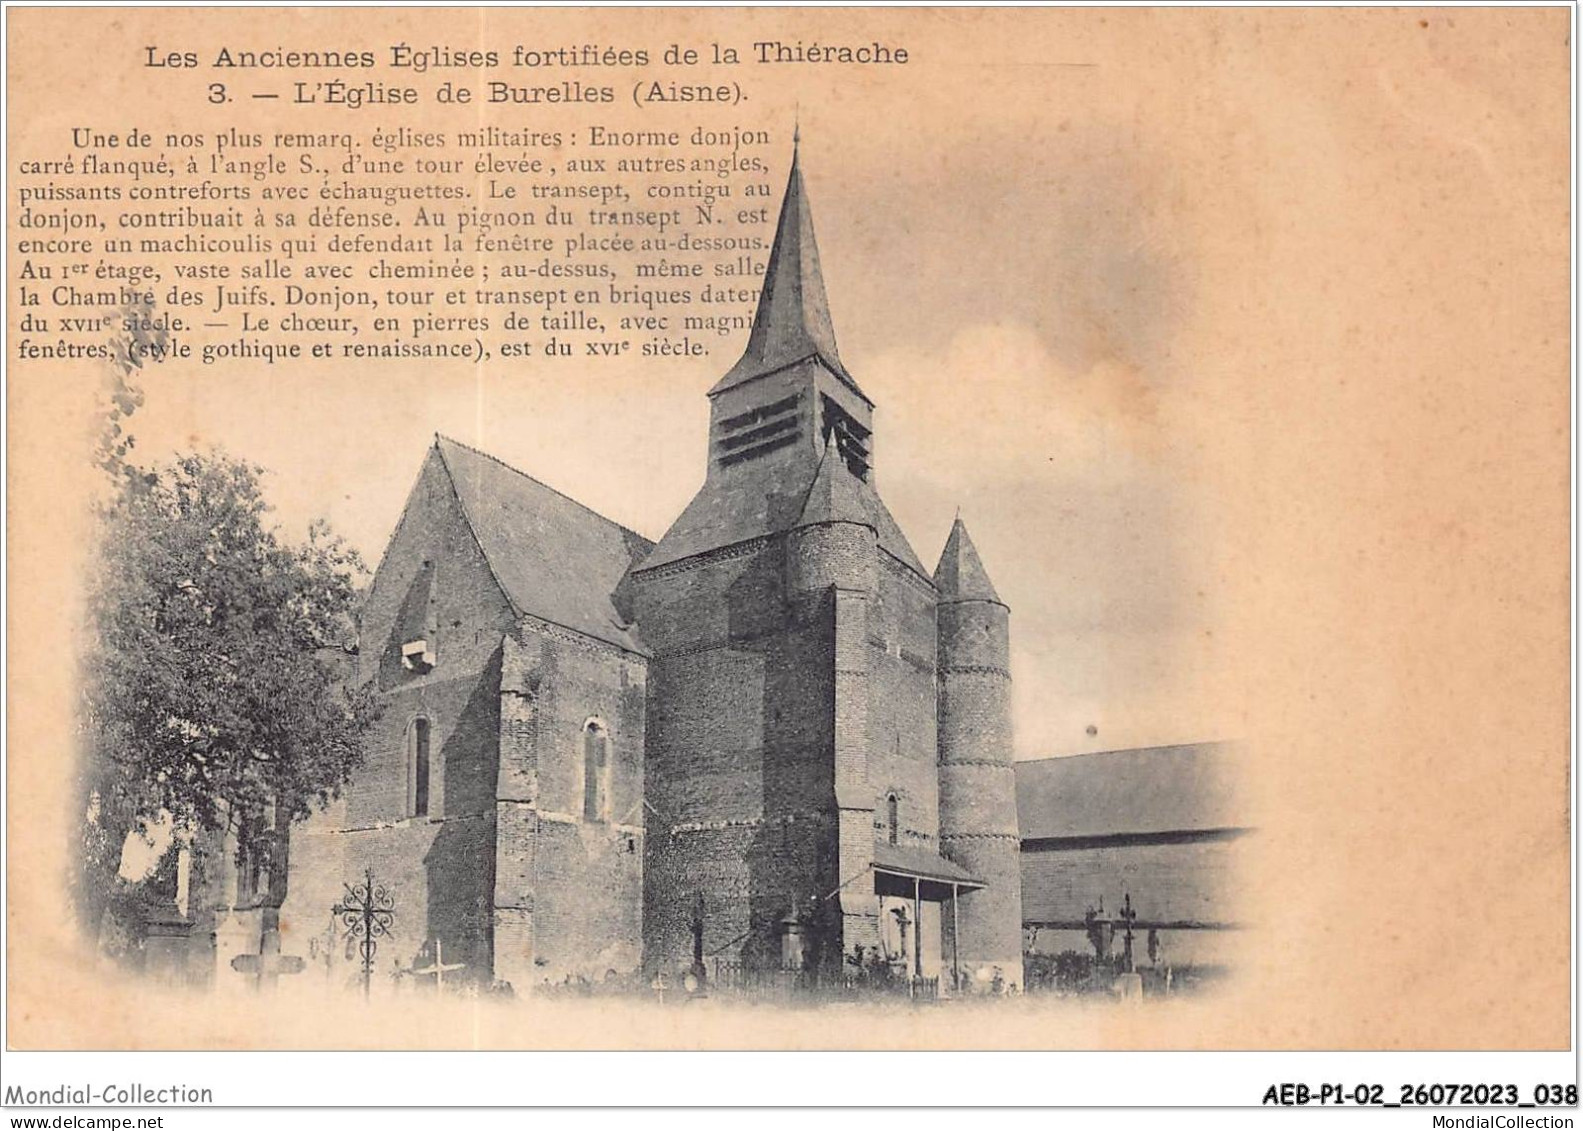 AEBP1-02-0020 - LES ANCIENNES EGLISES FORTIFIEES DE LA THIRACHE - L'Eglise De Burelles - Vervins